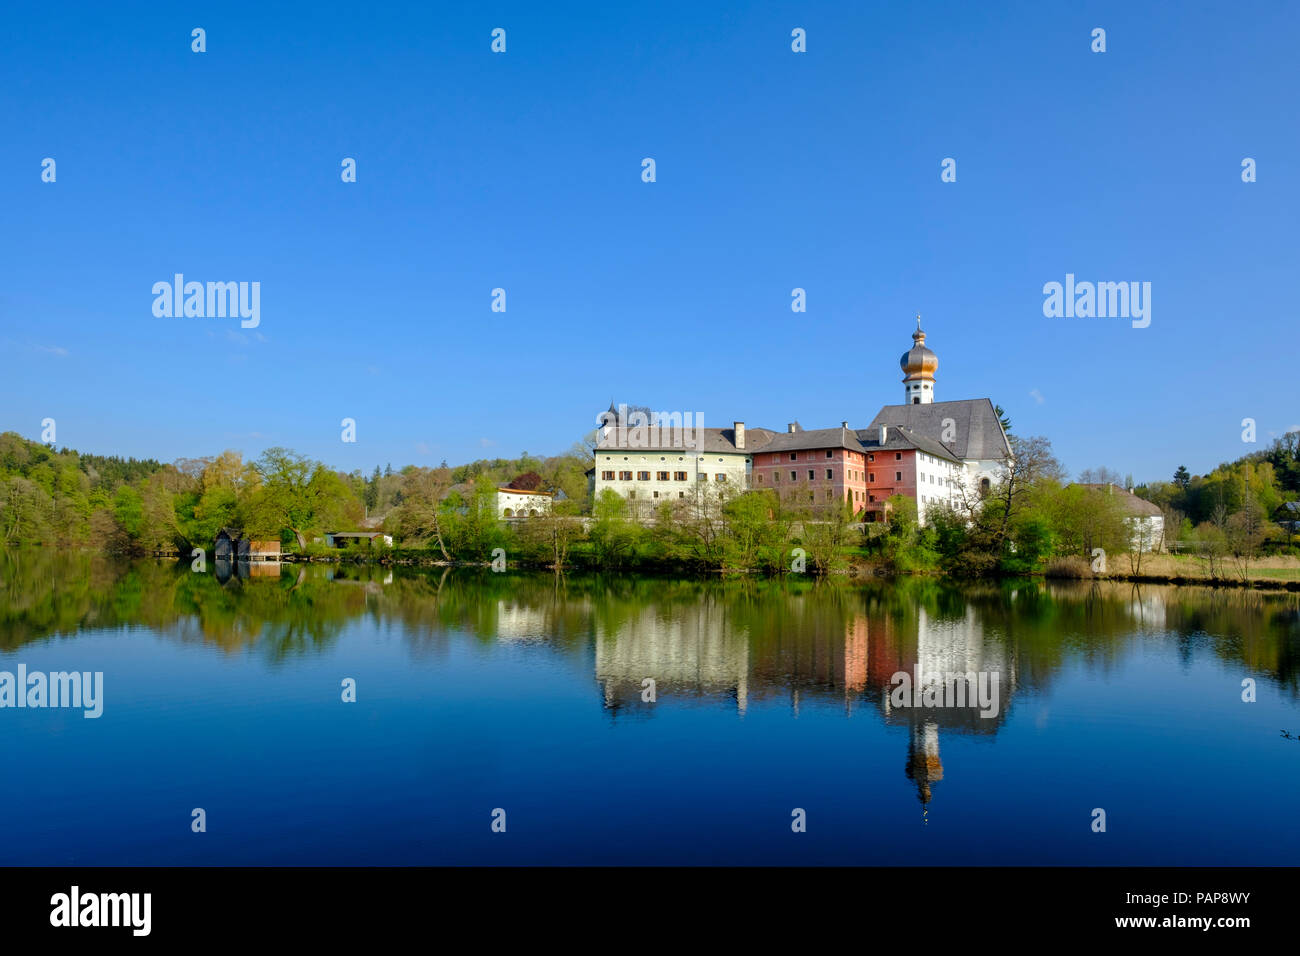 Alemania, Baviera, la Alta Baviera, Chiemgau, Rupertigau, Rupertiwinkel, ira, vistas a la antigua abadía Hoeglwoerth y lago Foto de stock